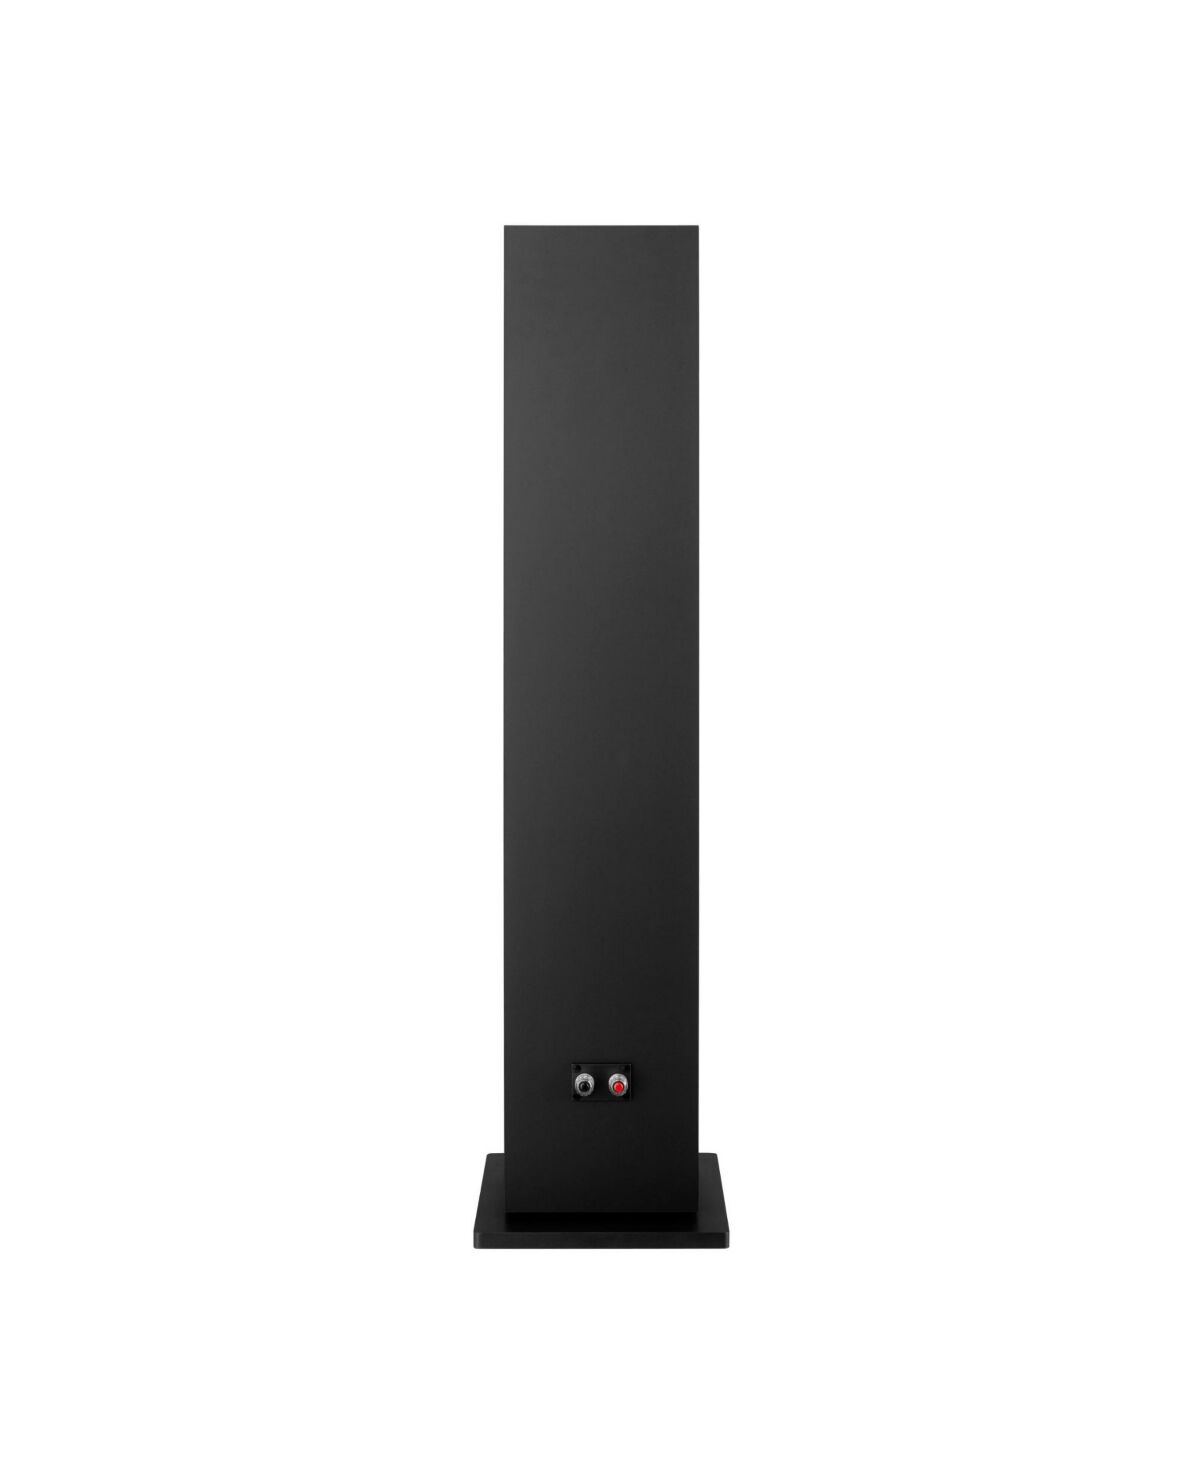 Sony Sscs3 3-Way Floor standing Speaker (Single, Black) - Black